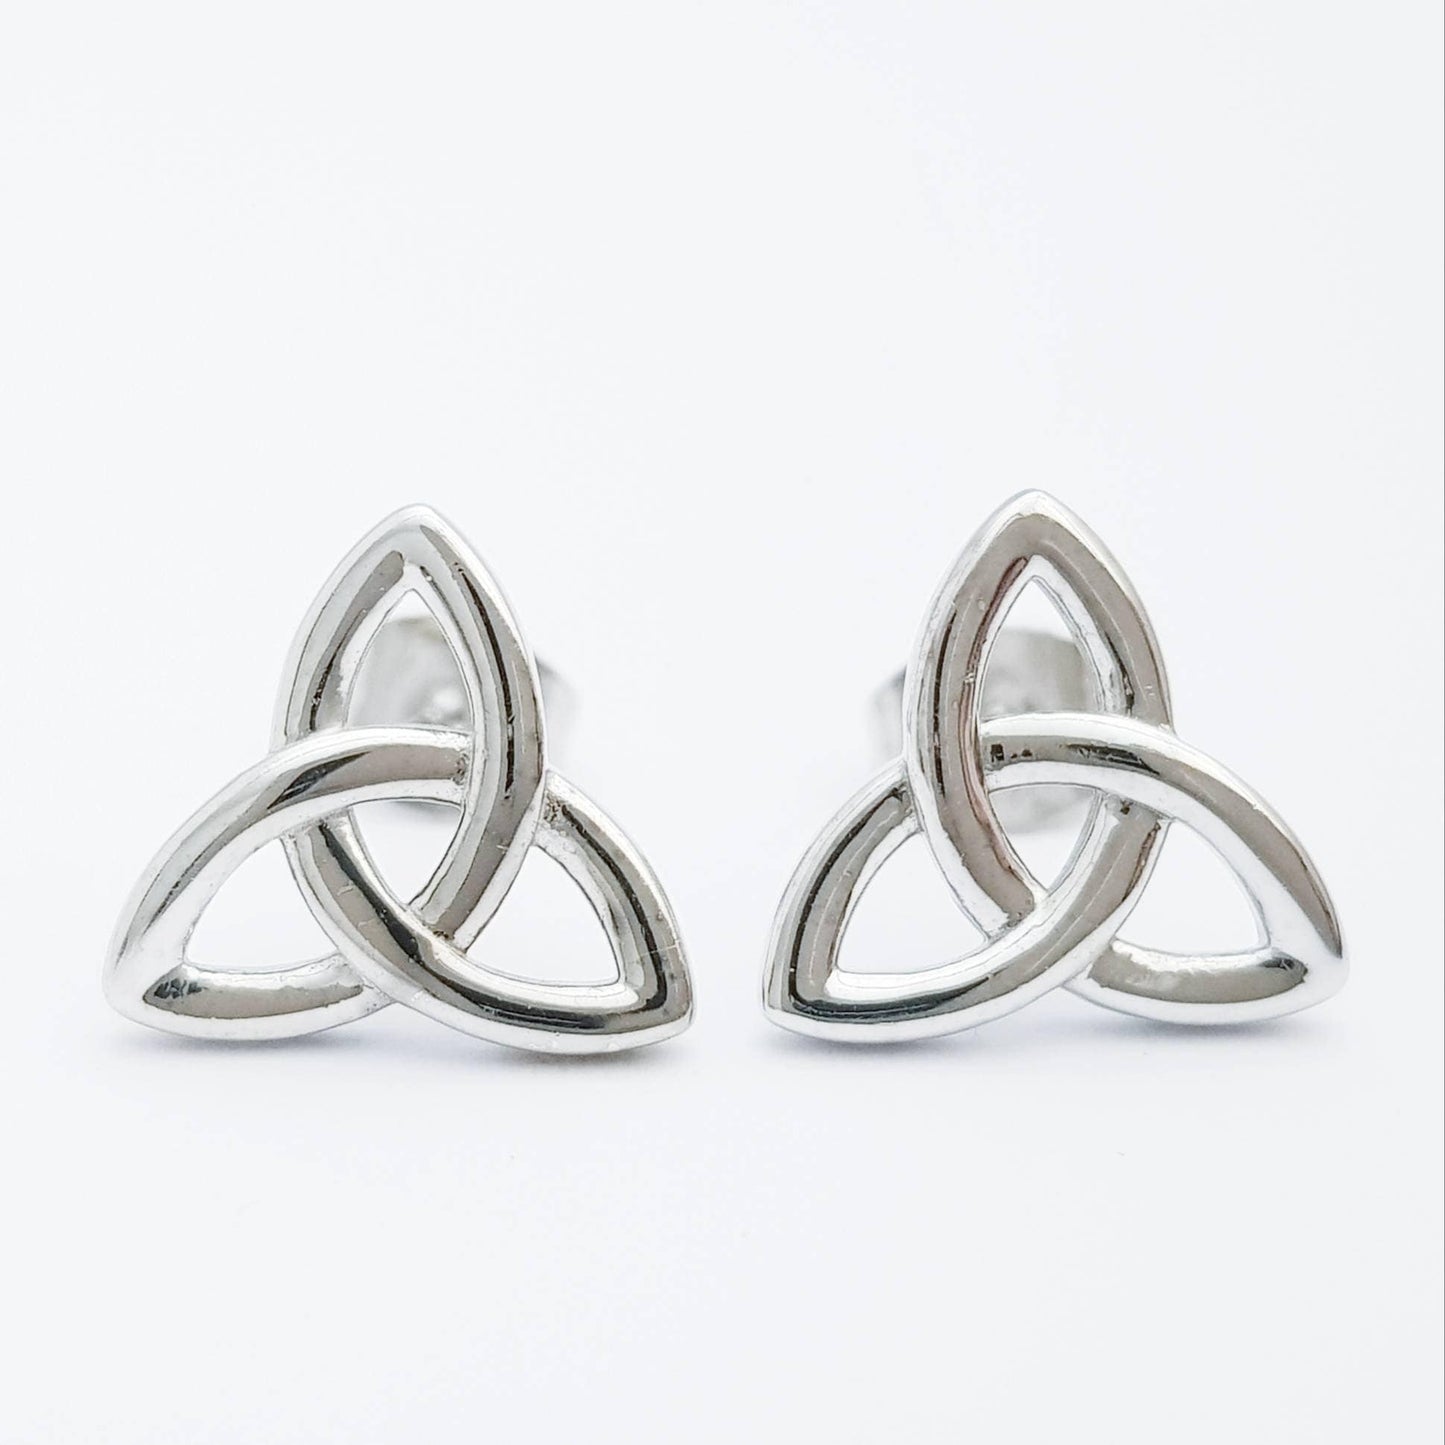 Silver Celtic knot Earrings, Celtic studs, trinity knot stud earrings